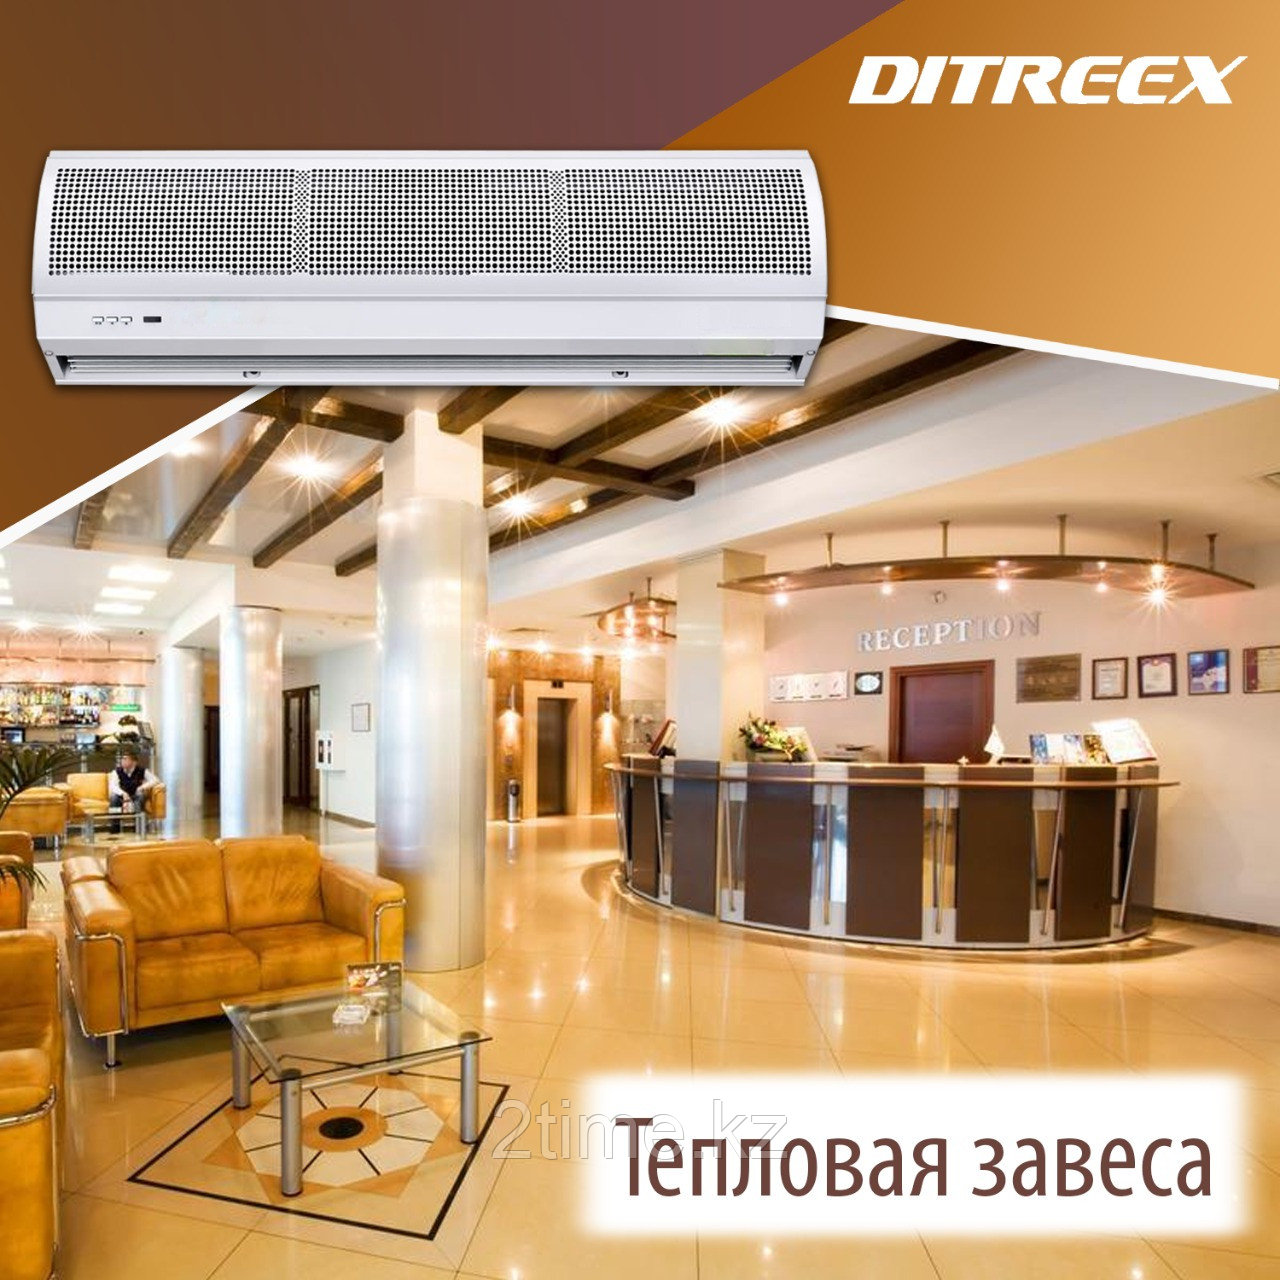 Тепловая Воздушная Завеса Ditreex: RM-1008S-D/Y (2 - 4 кВт/220В), фото 1